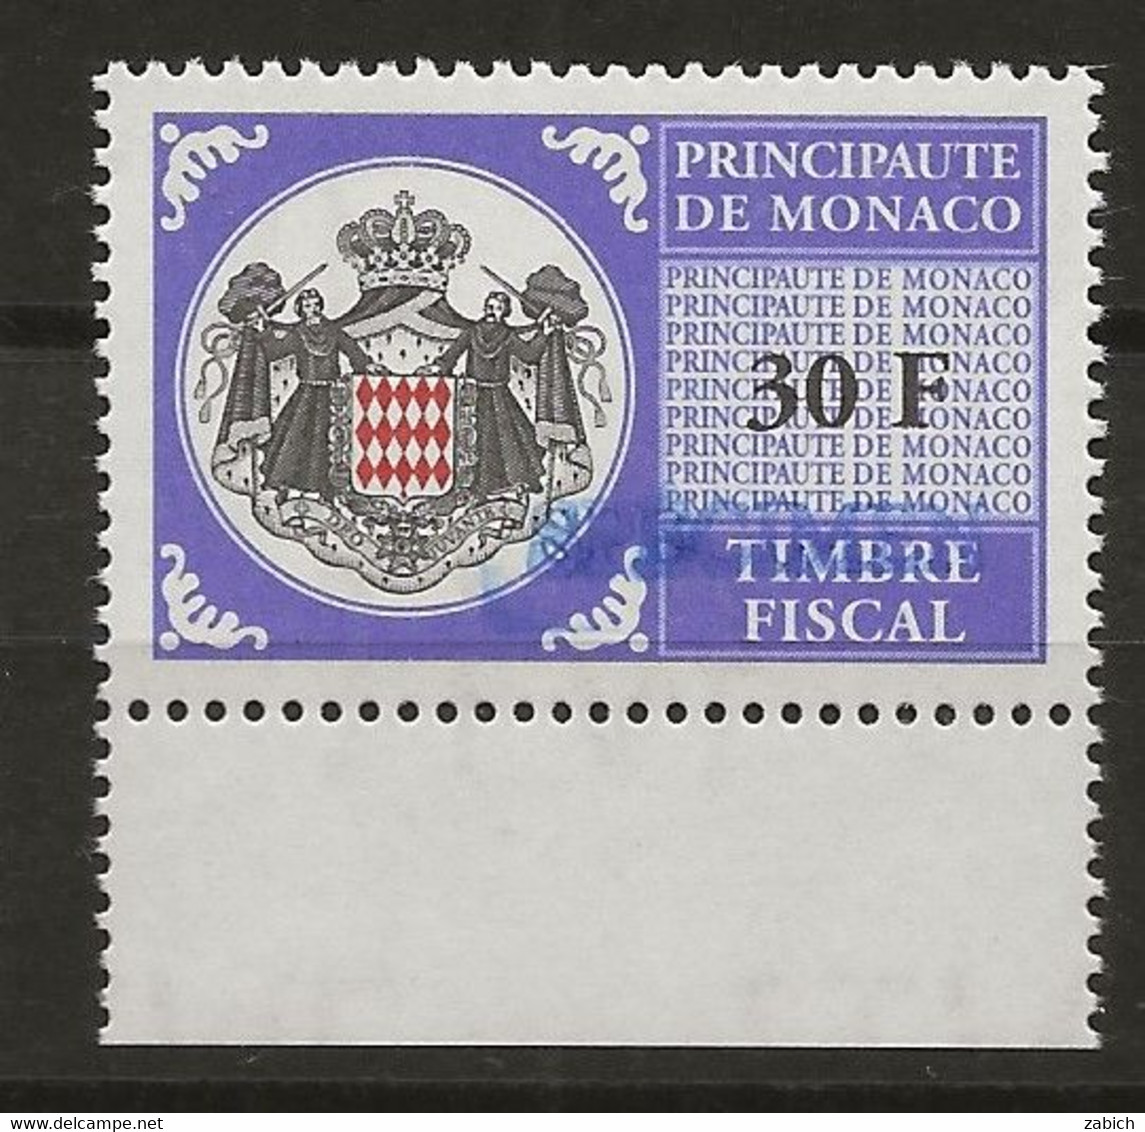 FISCAUX DE MONACO SERIE UNIFIEE N° 104 30 F Violet Bleu Rare Surchargé Spécimen Neuf Gomme Mnh (**) - Revenue